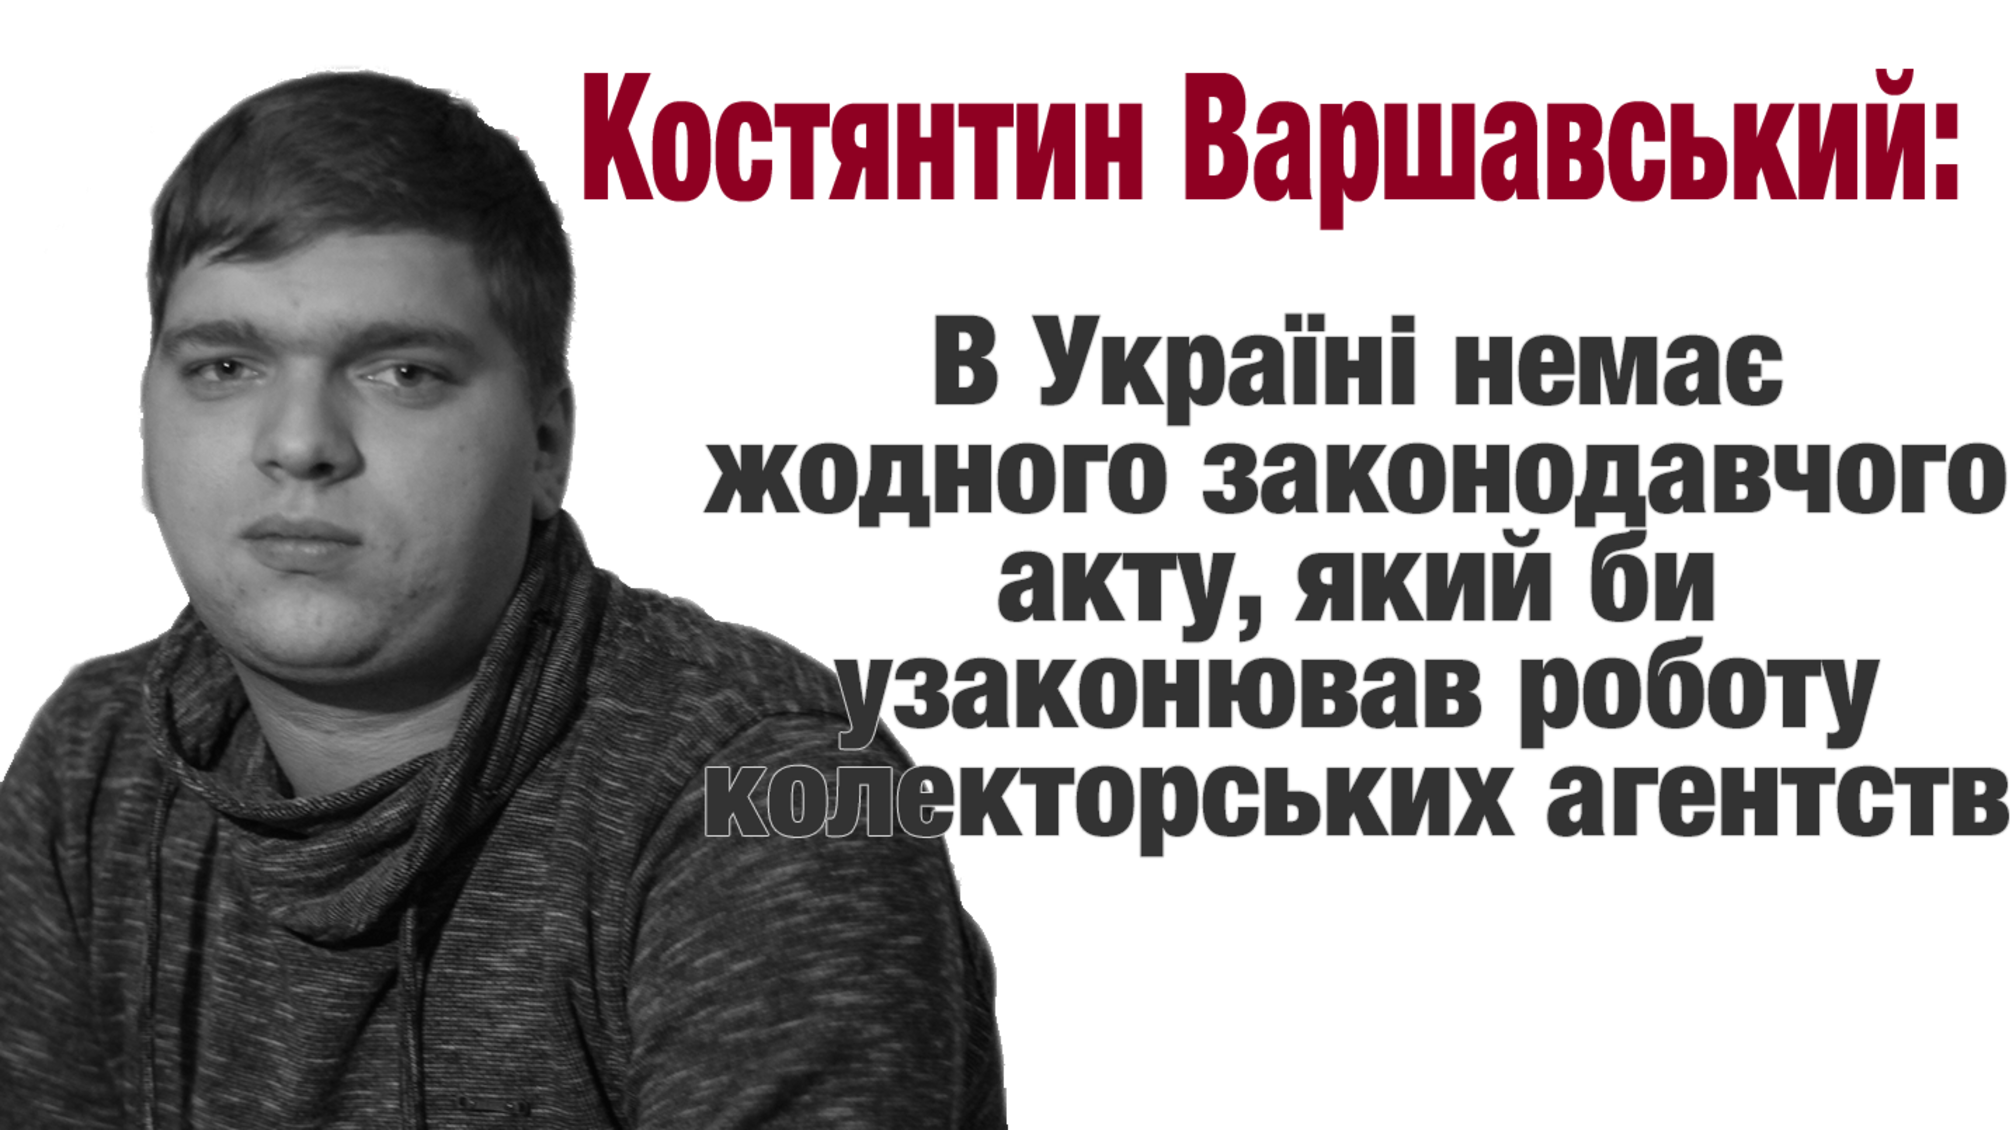 Костянтин Варшавський: в Україні немає жодного законодавчого акту, який би узаконював роботу колекторських агентств